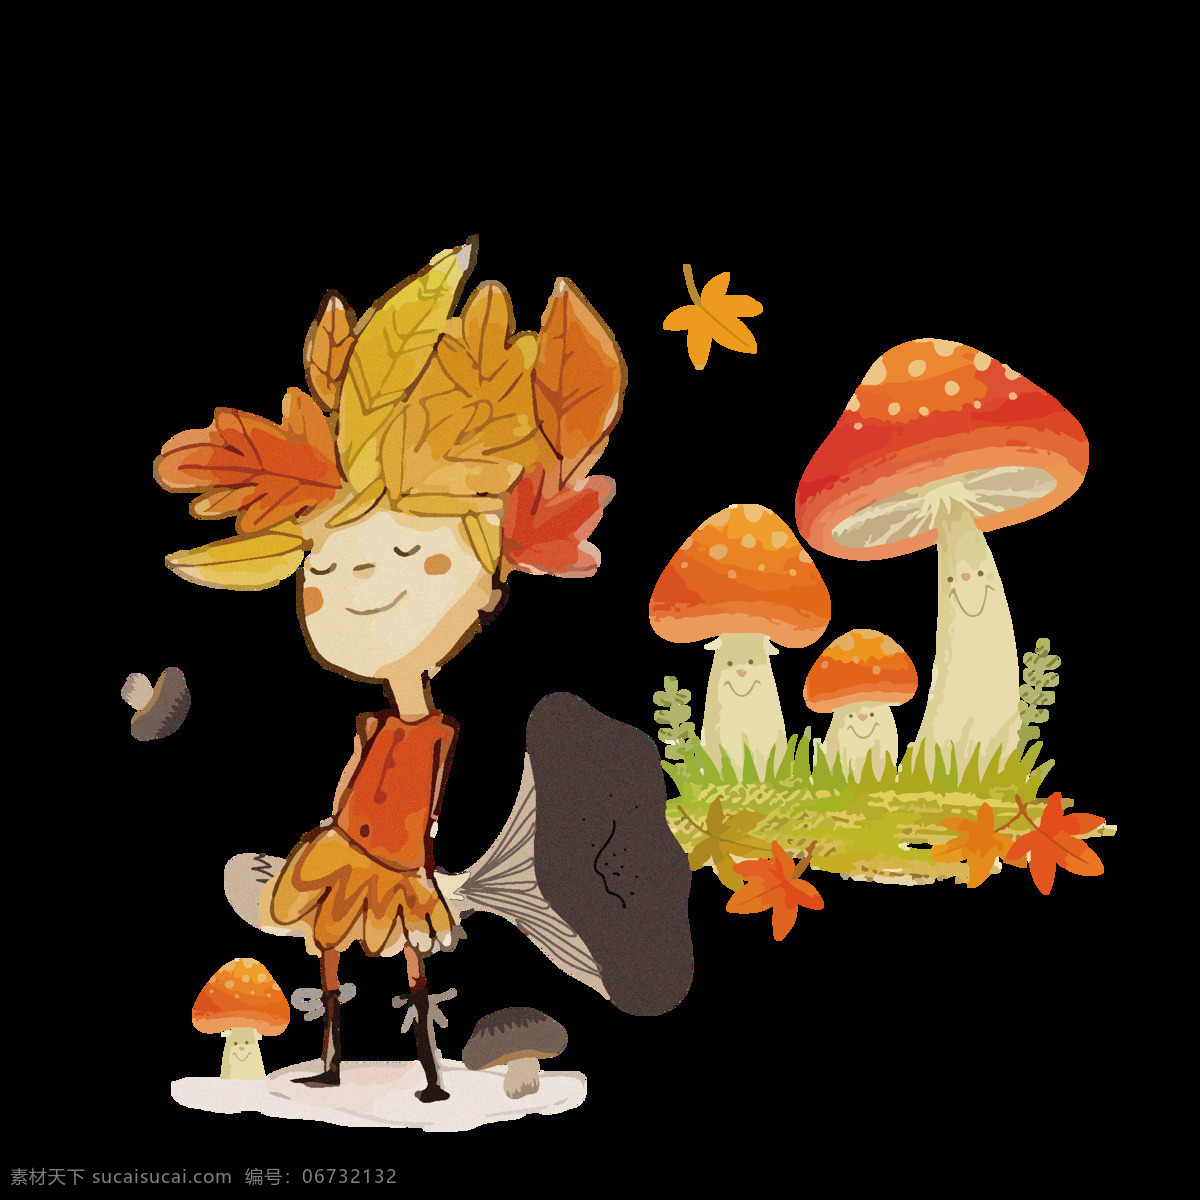 秋收 原创 商用 小 男孩 立秋 秋季 二十四节气 元素 秋天 丰收 蘑菇 树叶 手绘